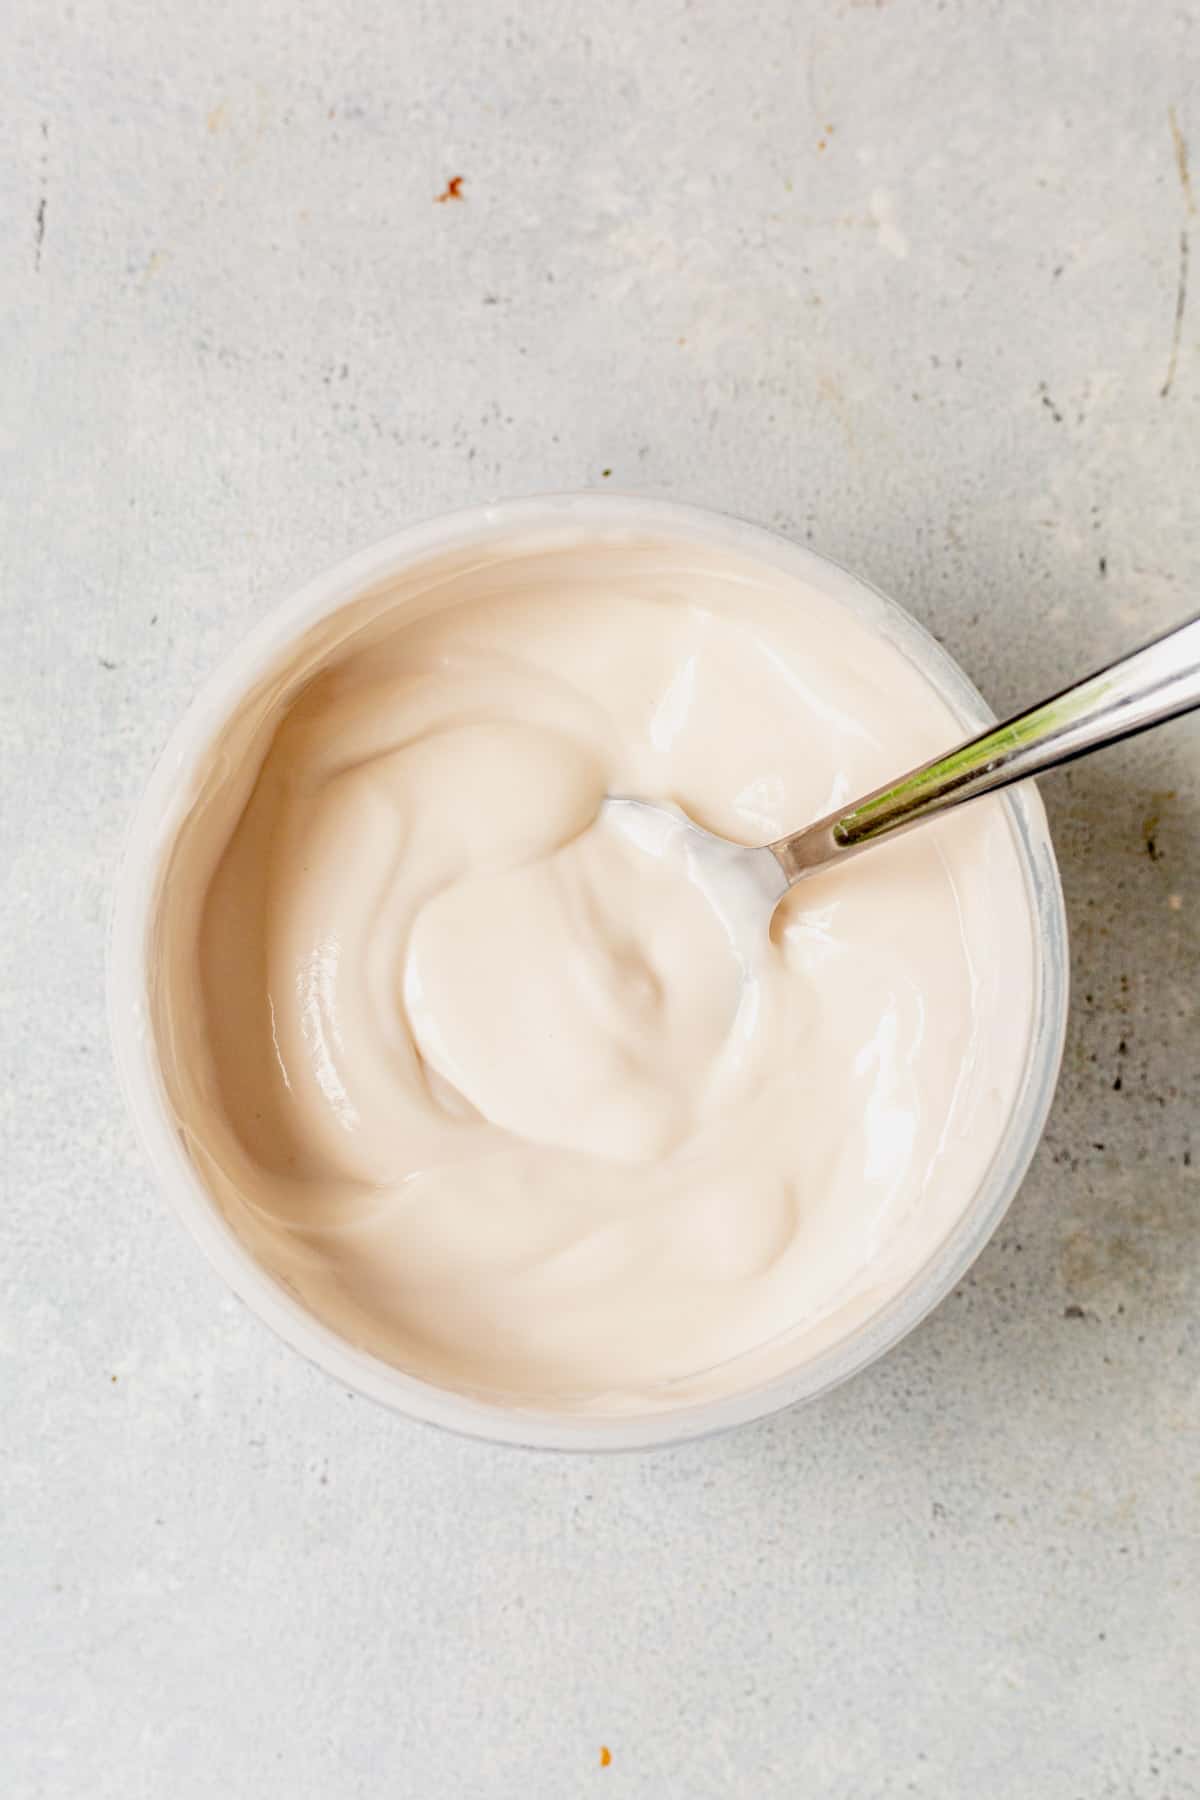 greek yogurt in a bowl with a spoon